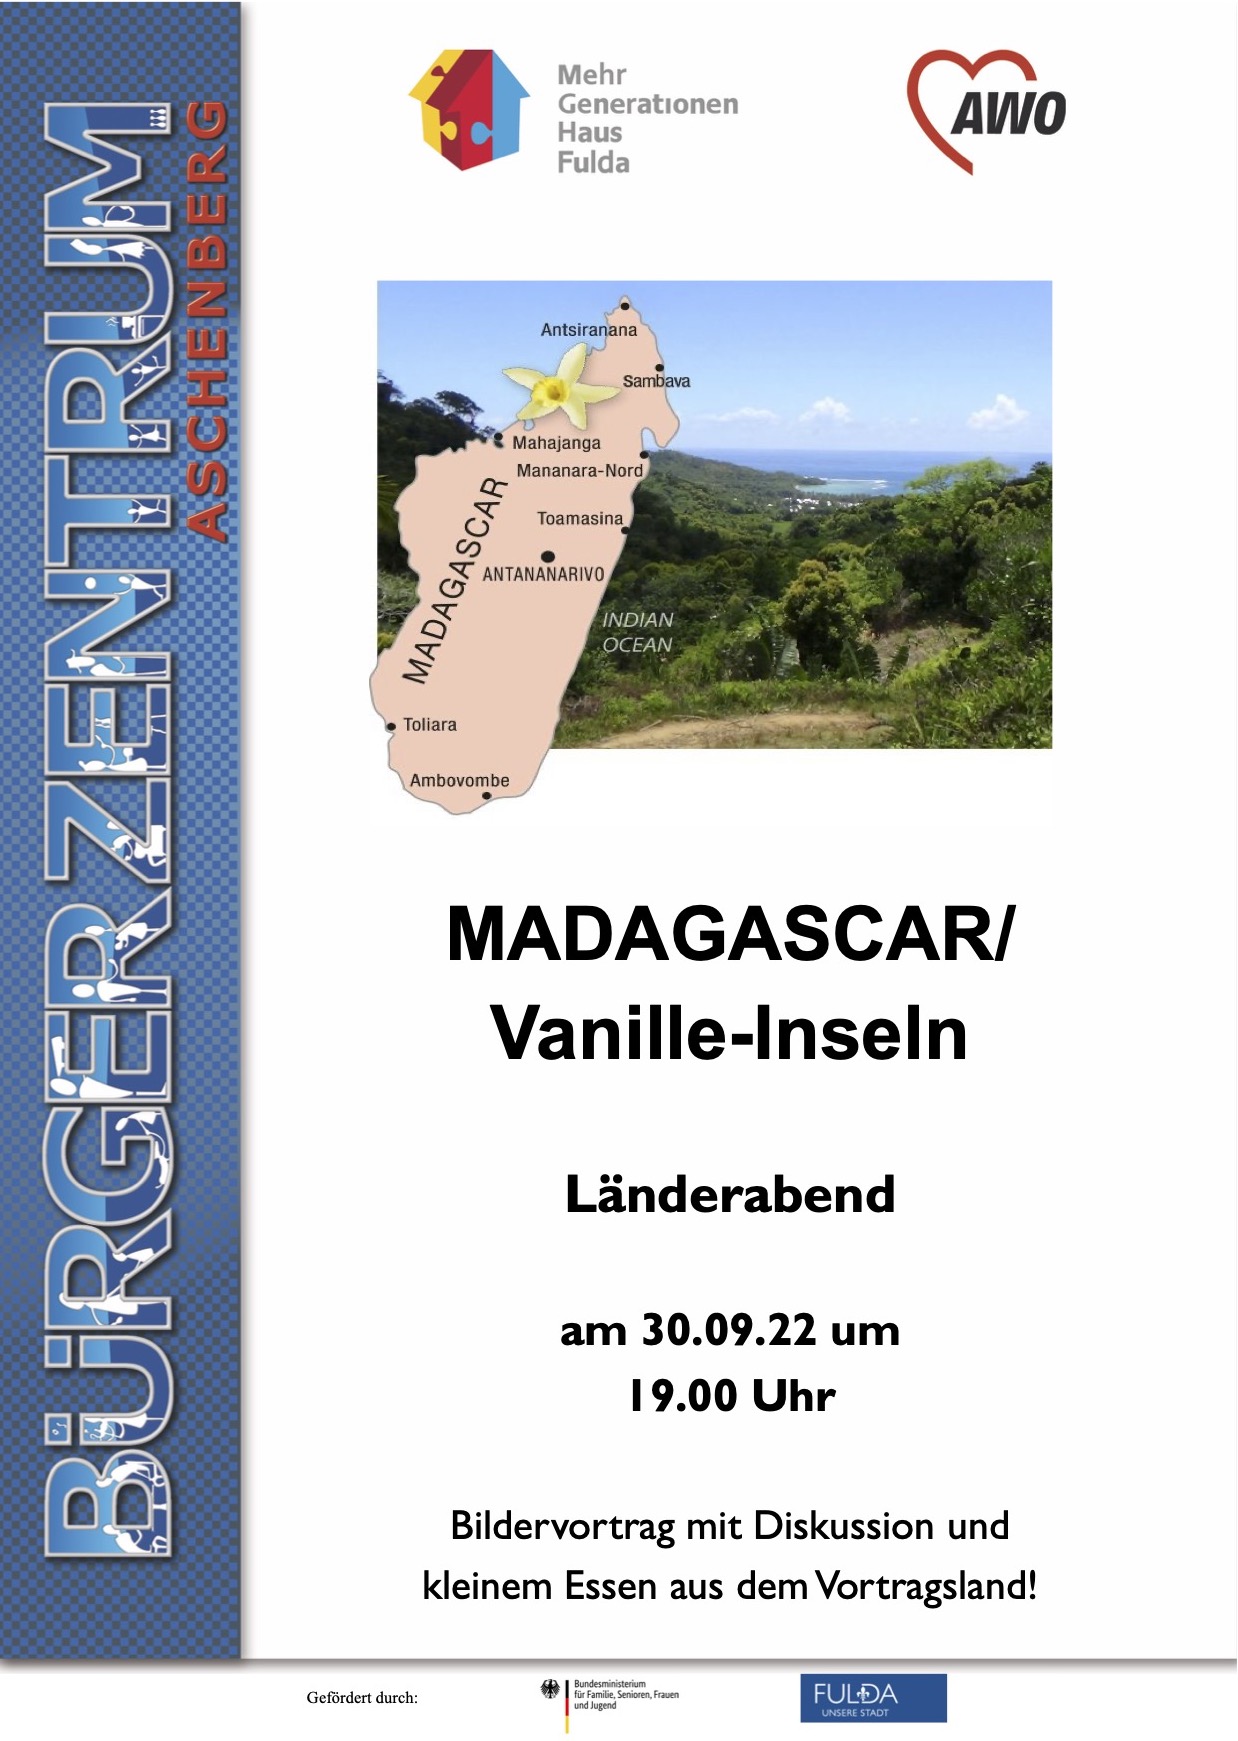 Madagaskar Länderarbend